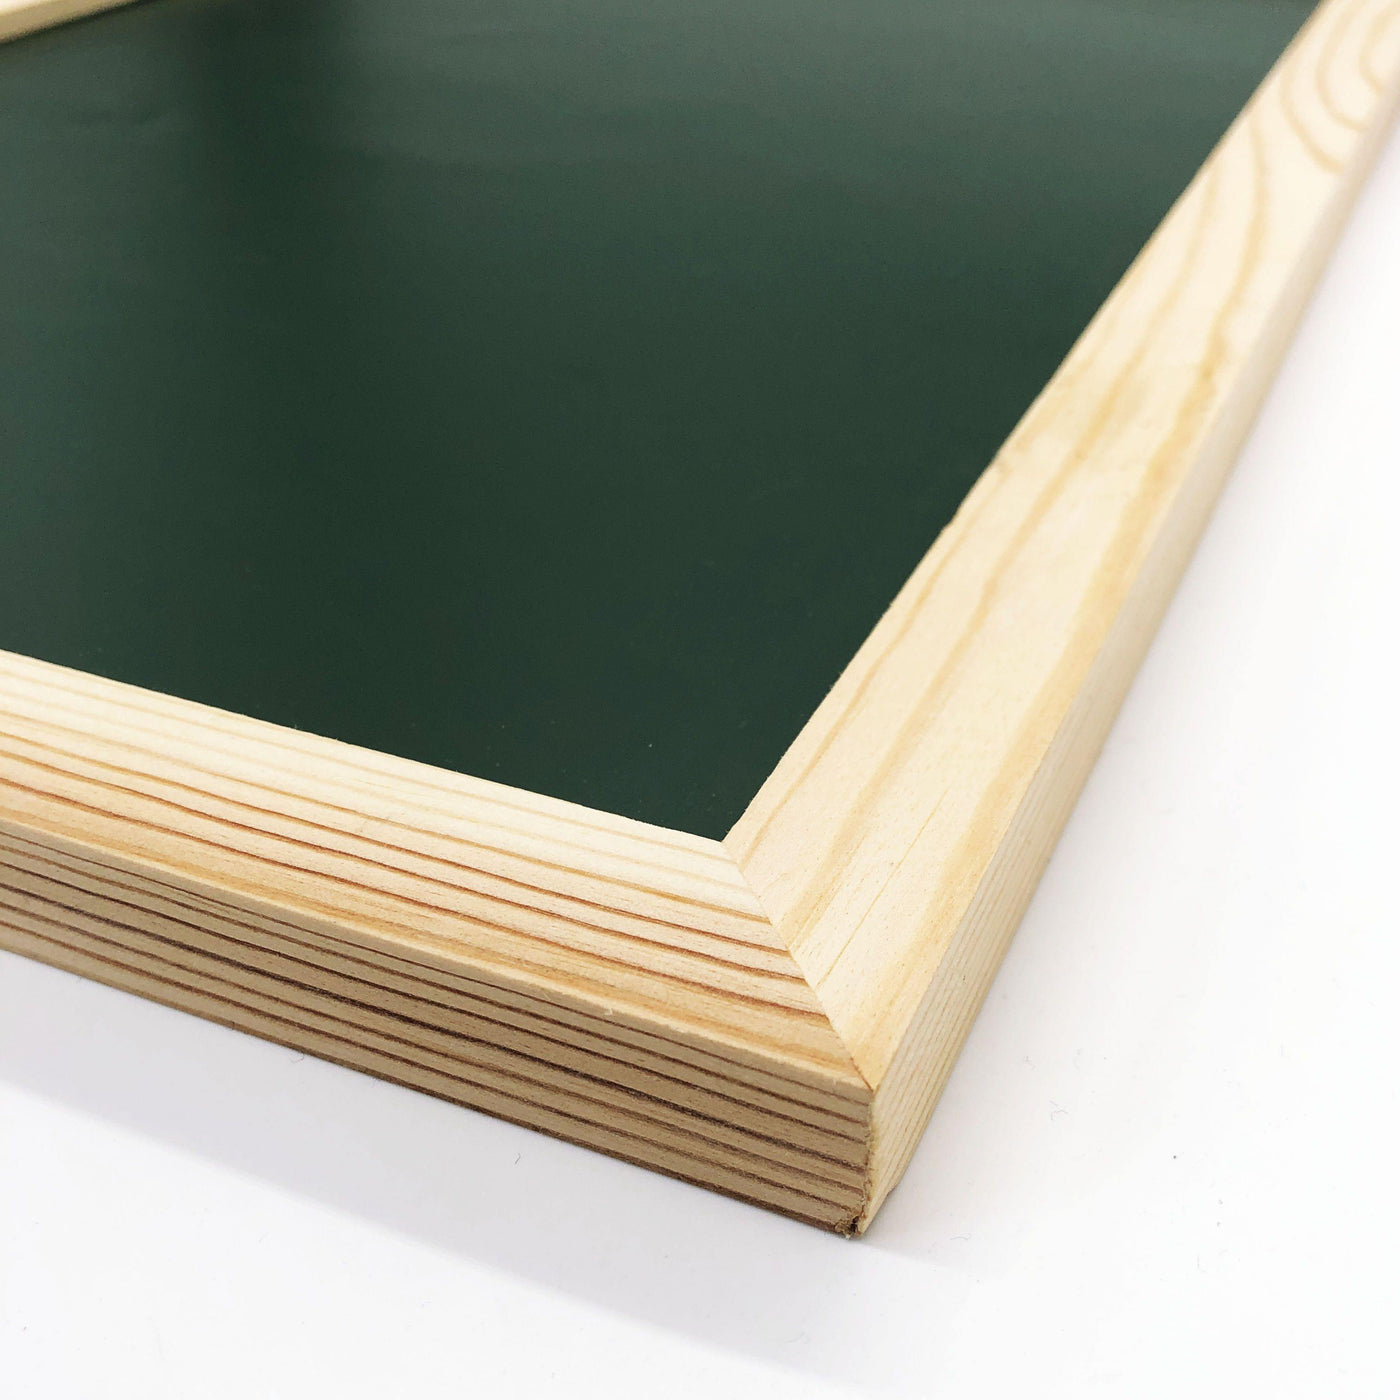 Magnetische Kreidetafel mit Holzrahmen (30x40cm) -Grün-Weiß - TYPE OH